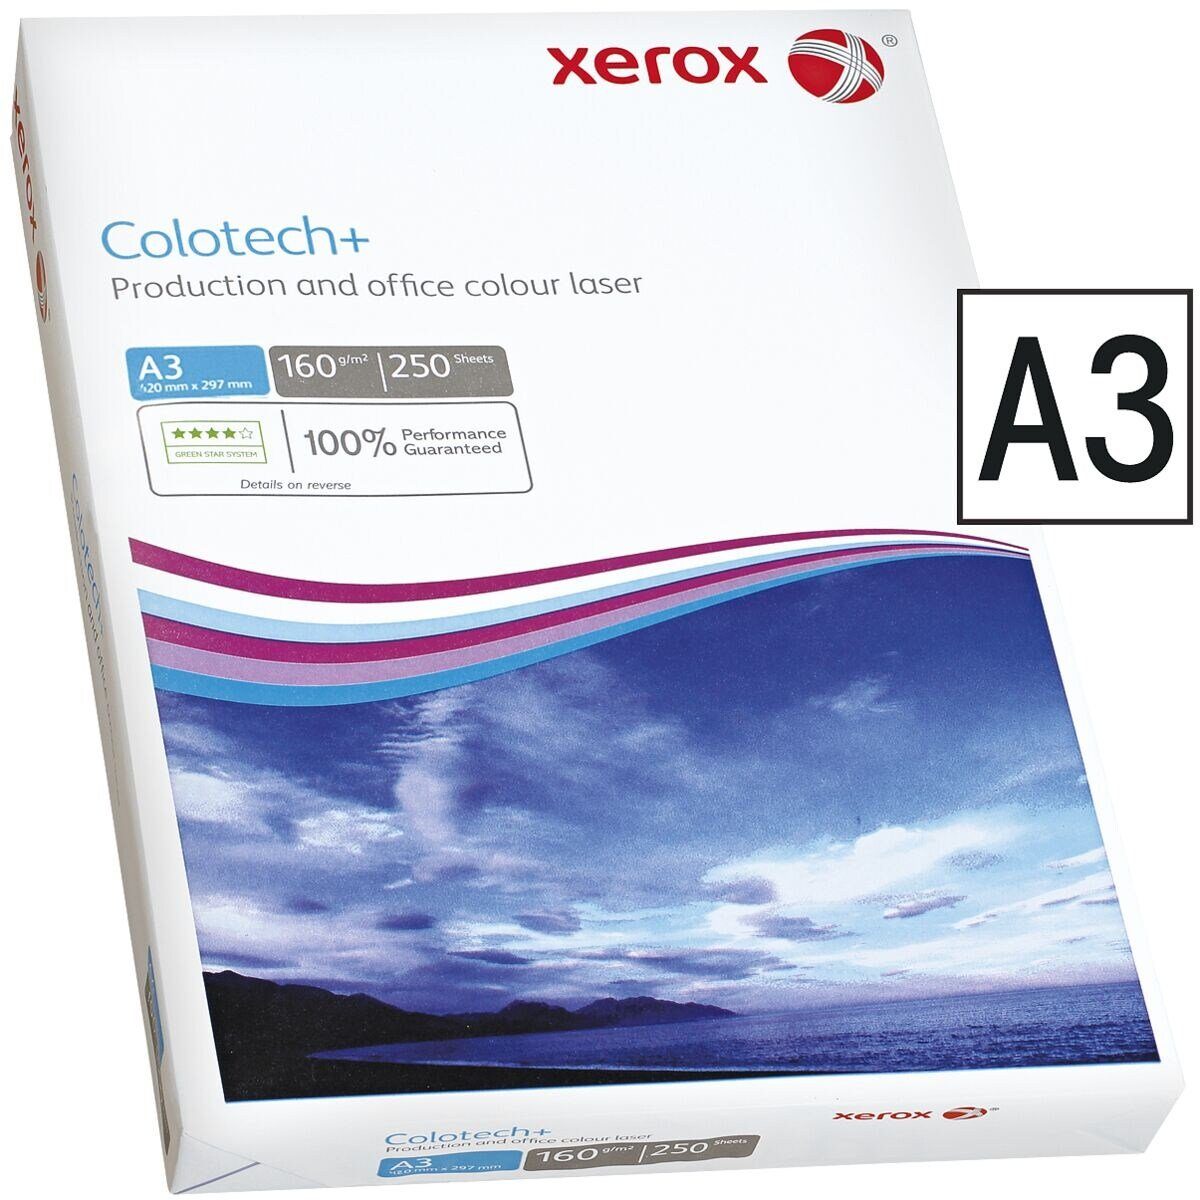 Xerox Blatt A3, Colotech+, Farblaser-Druckerpapier 250 g/m², DIN 160 Format